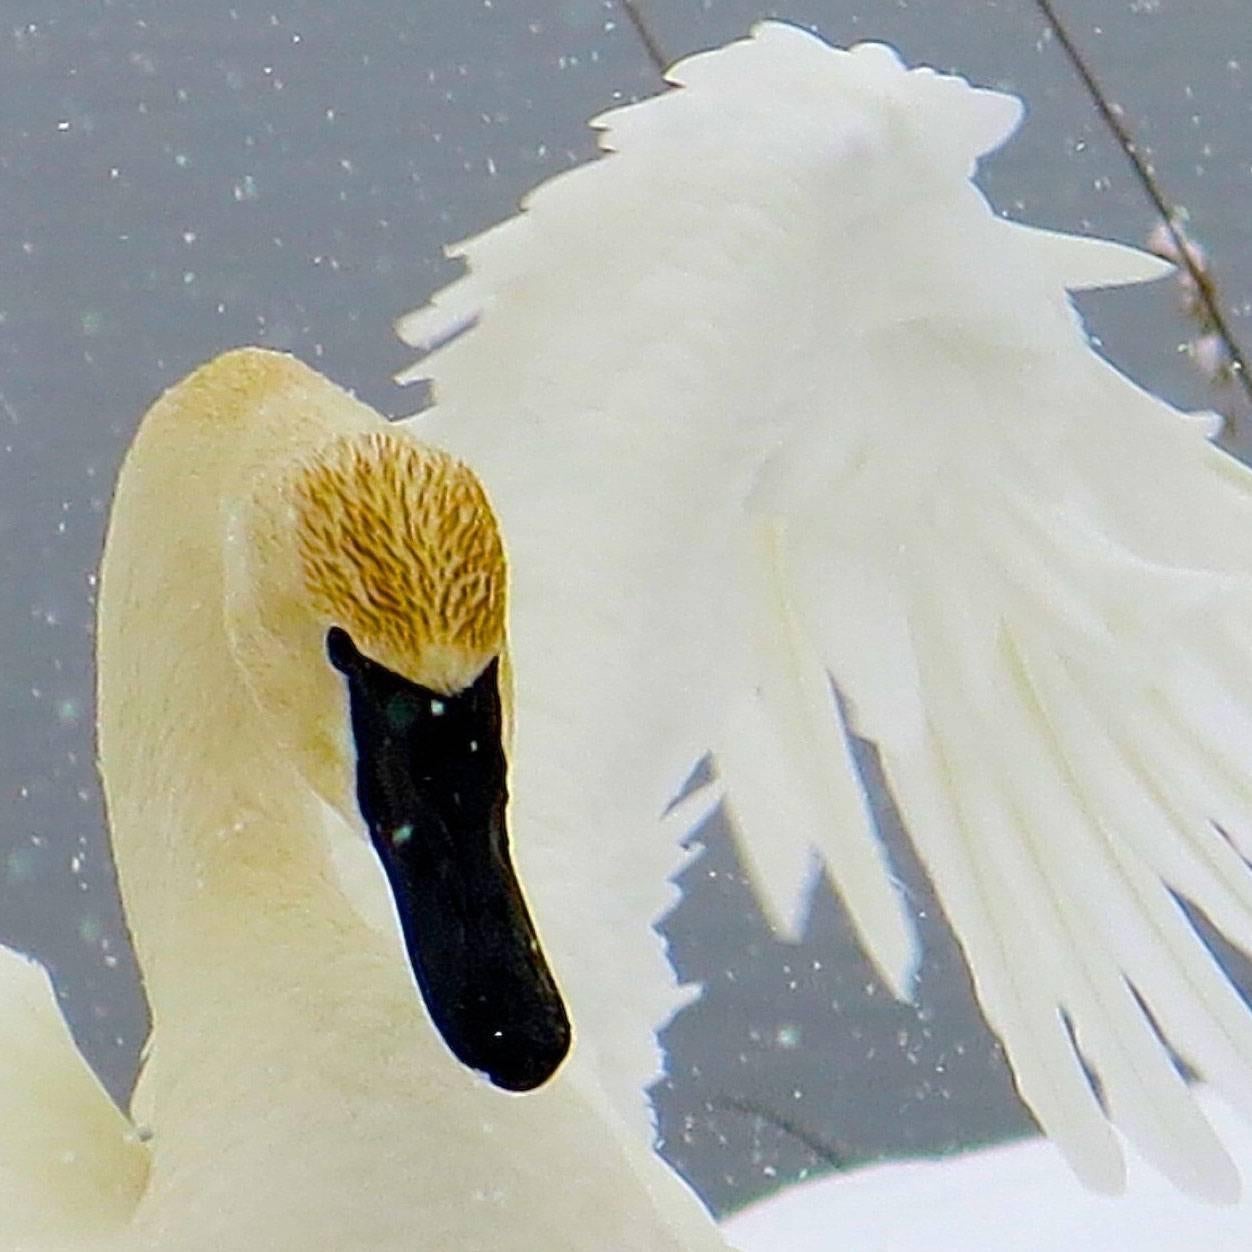 Swan in Snow - Print by Sandra Lee Kaplan